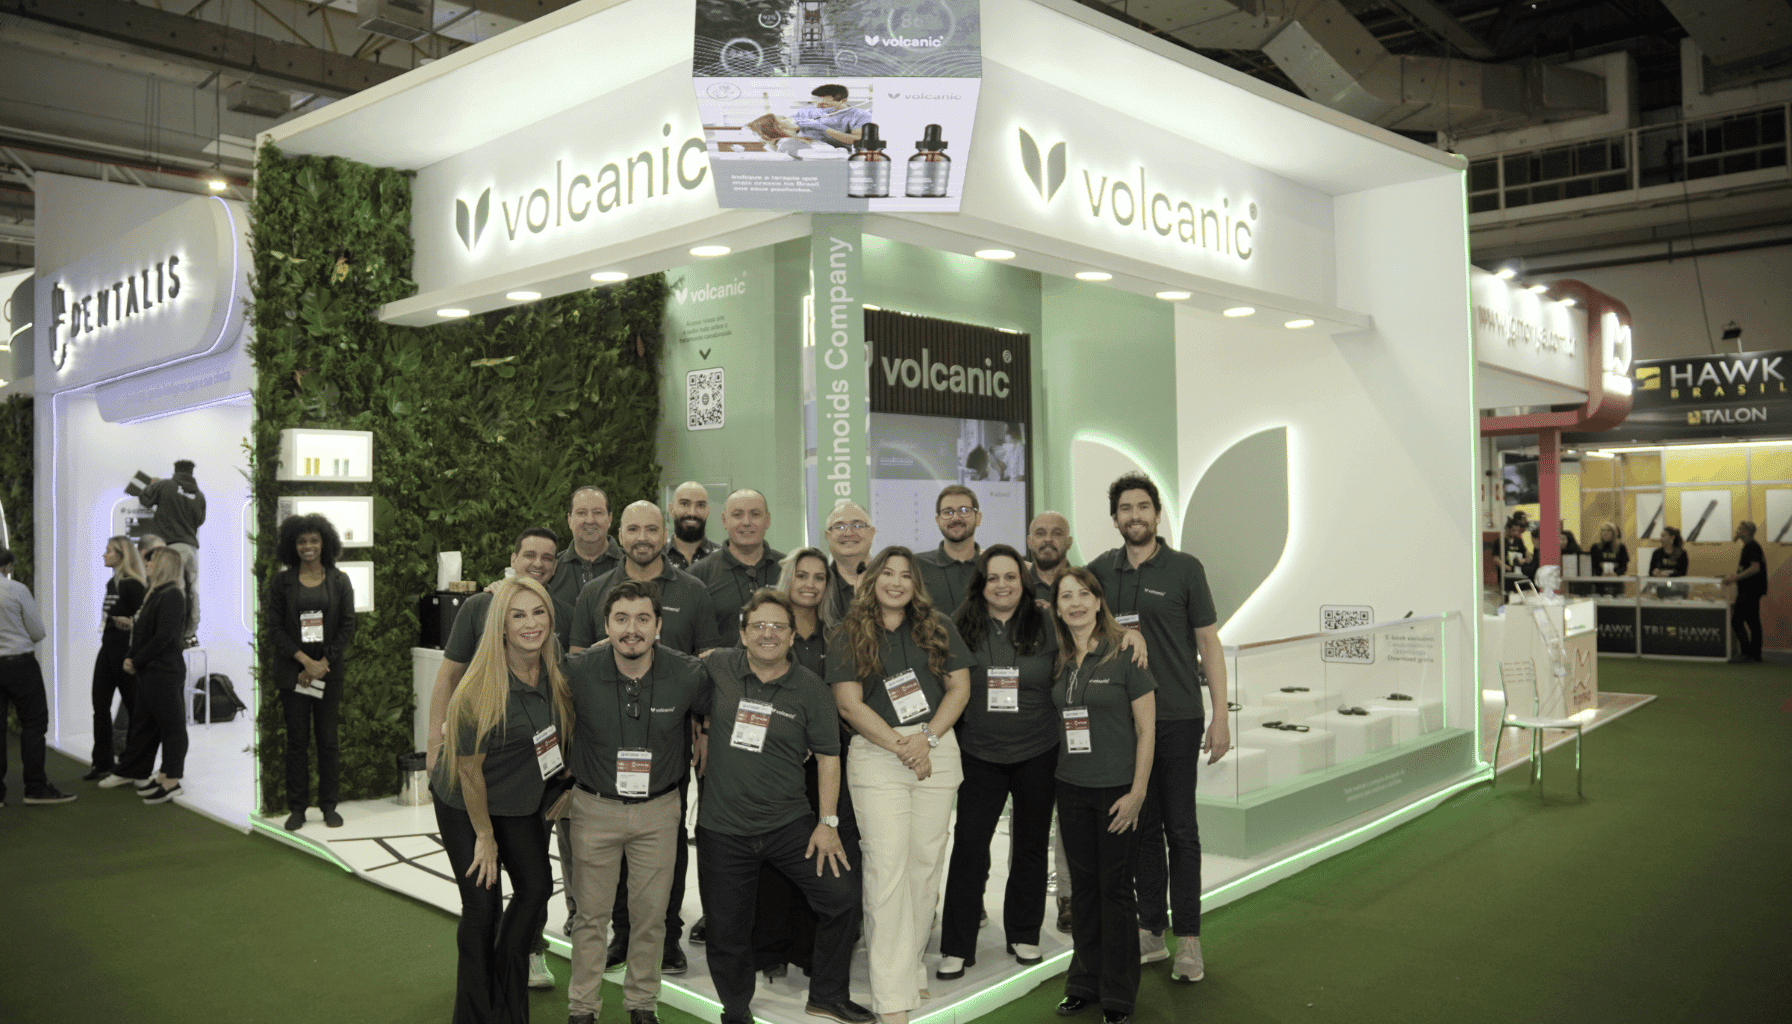 Volcanic participa do 41º Congresso Internacional de Odontologia de São Paulo – CIOSP